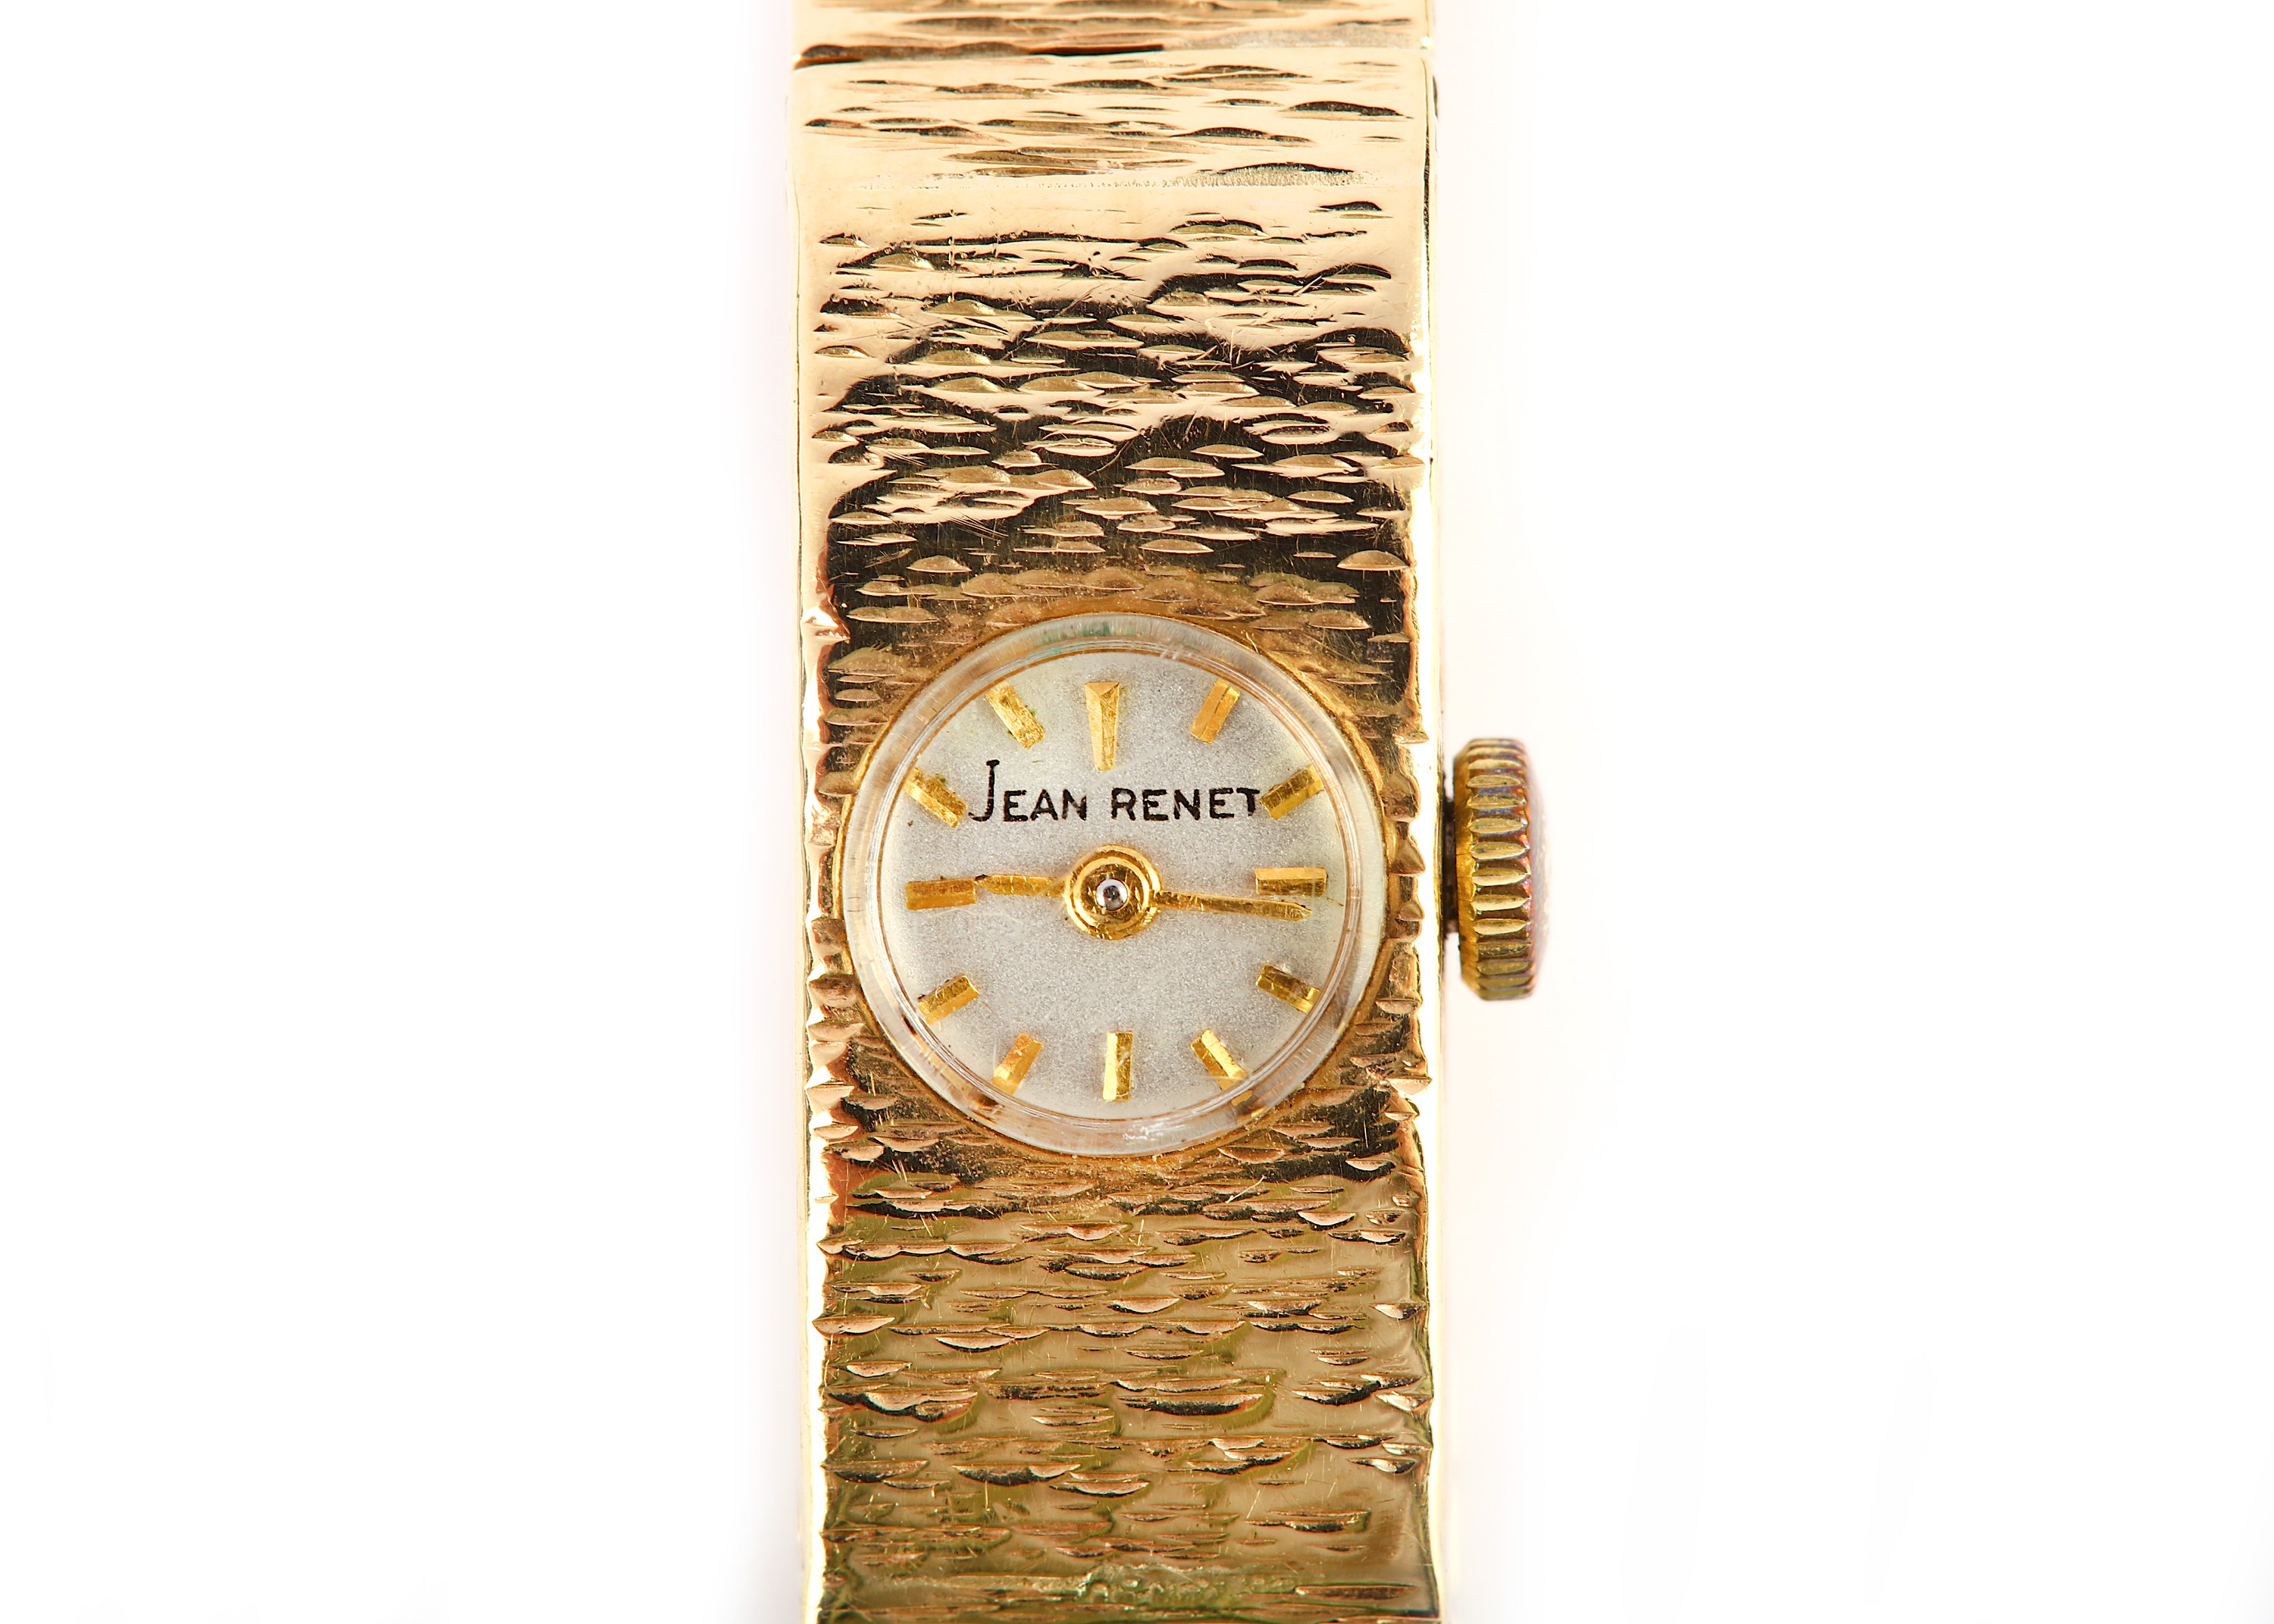 JEAN RENET. A LADIES 9K GOLD MANUAL WIND BRACELET WATCH. Date: 1959. Serial number: 610686. - Image 2 of 5